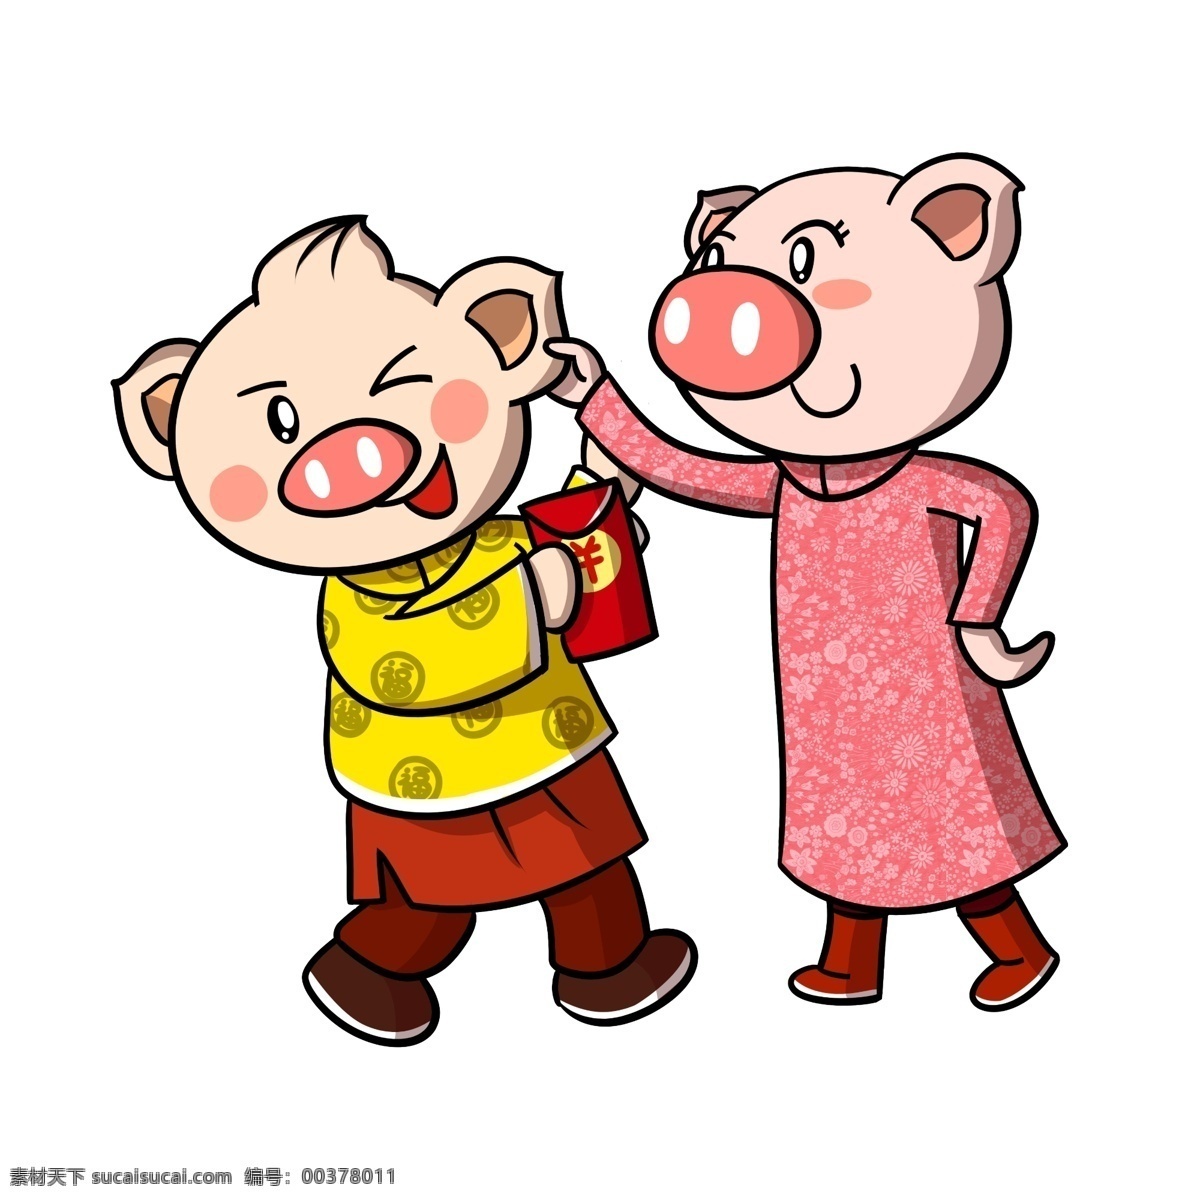 卡通 新年 猪年 小 猪 红包 透明 底 小猪 新年快乐 春节 庆祝 新年小猪 2019 卡通猪年 卡通小猪 新年卡通 猪年卡通